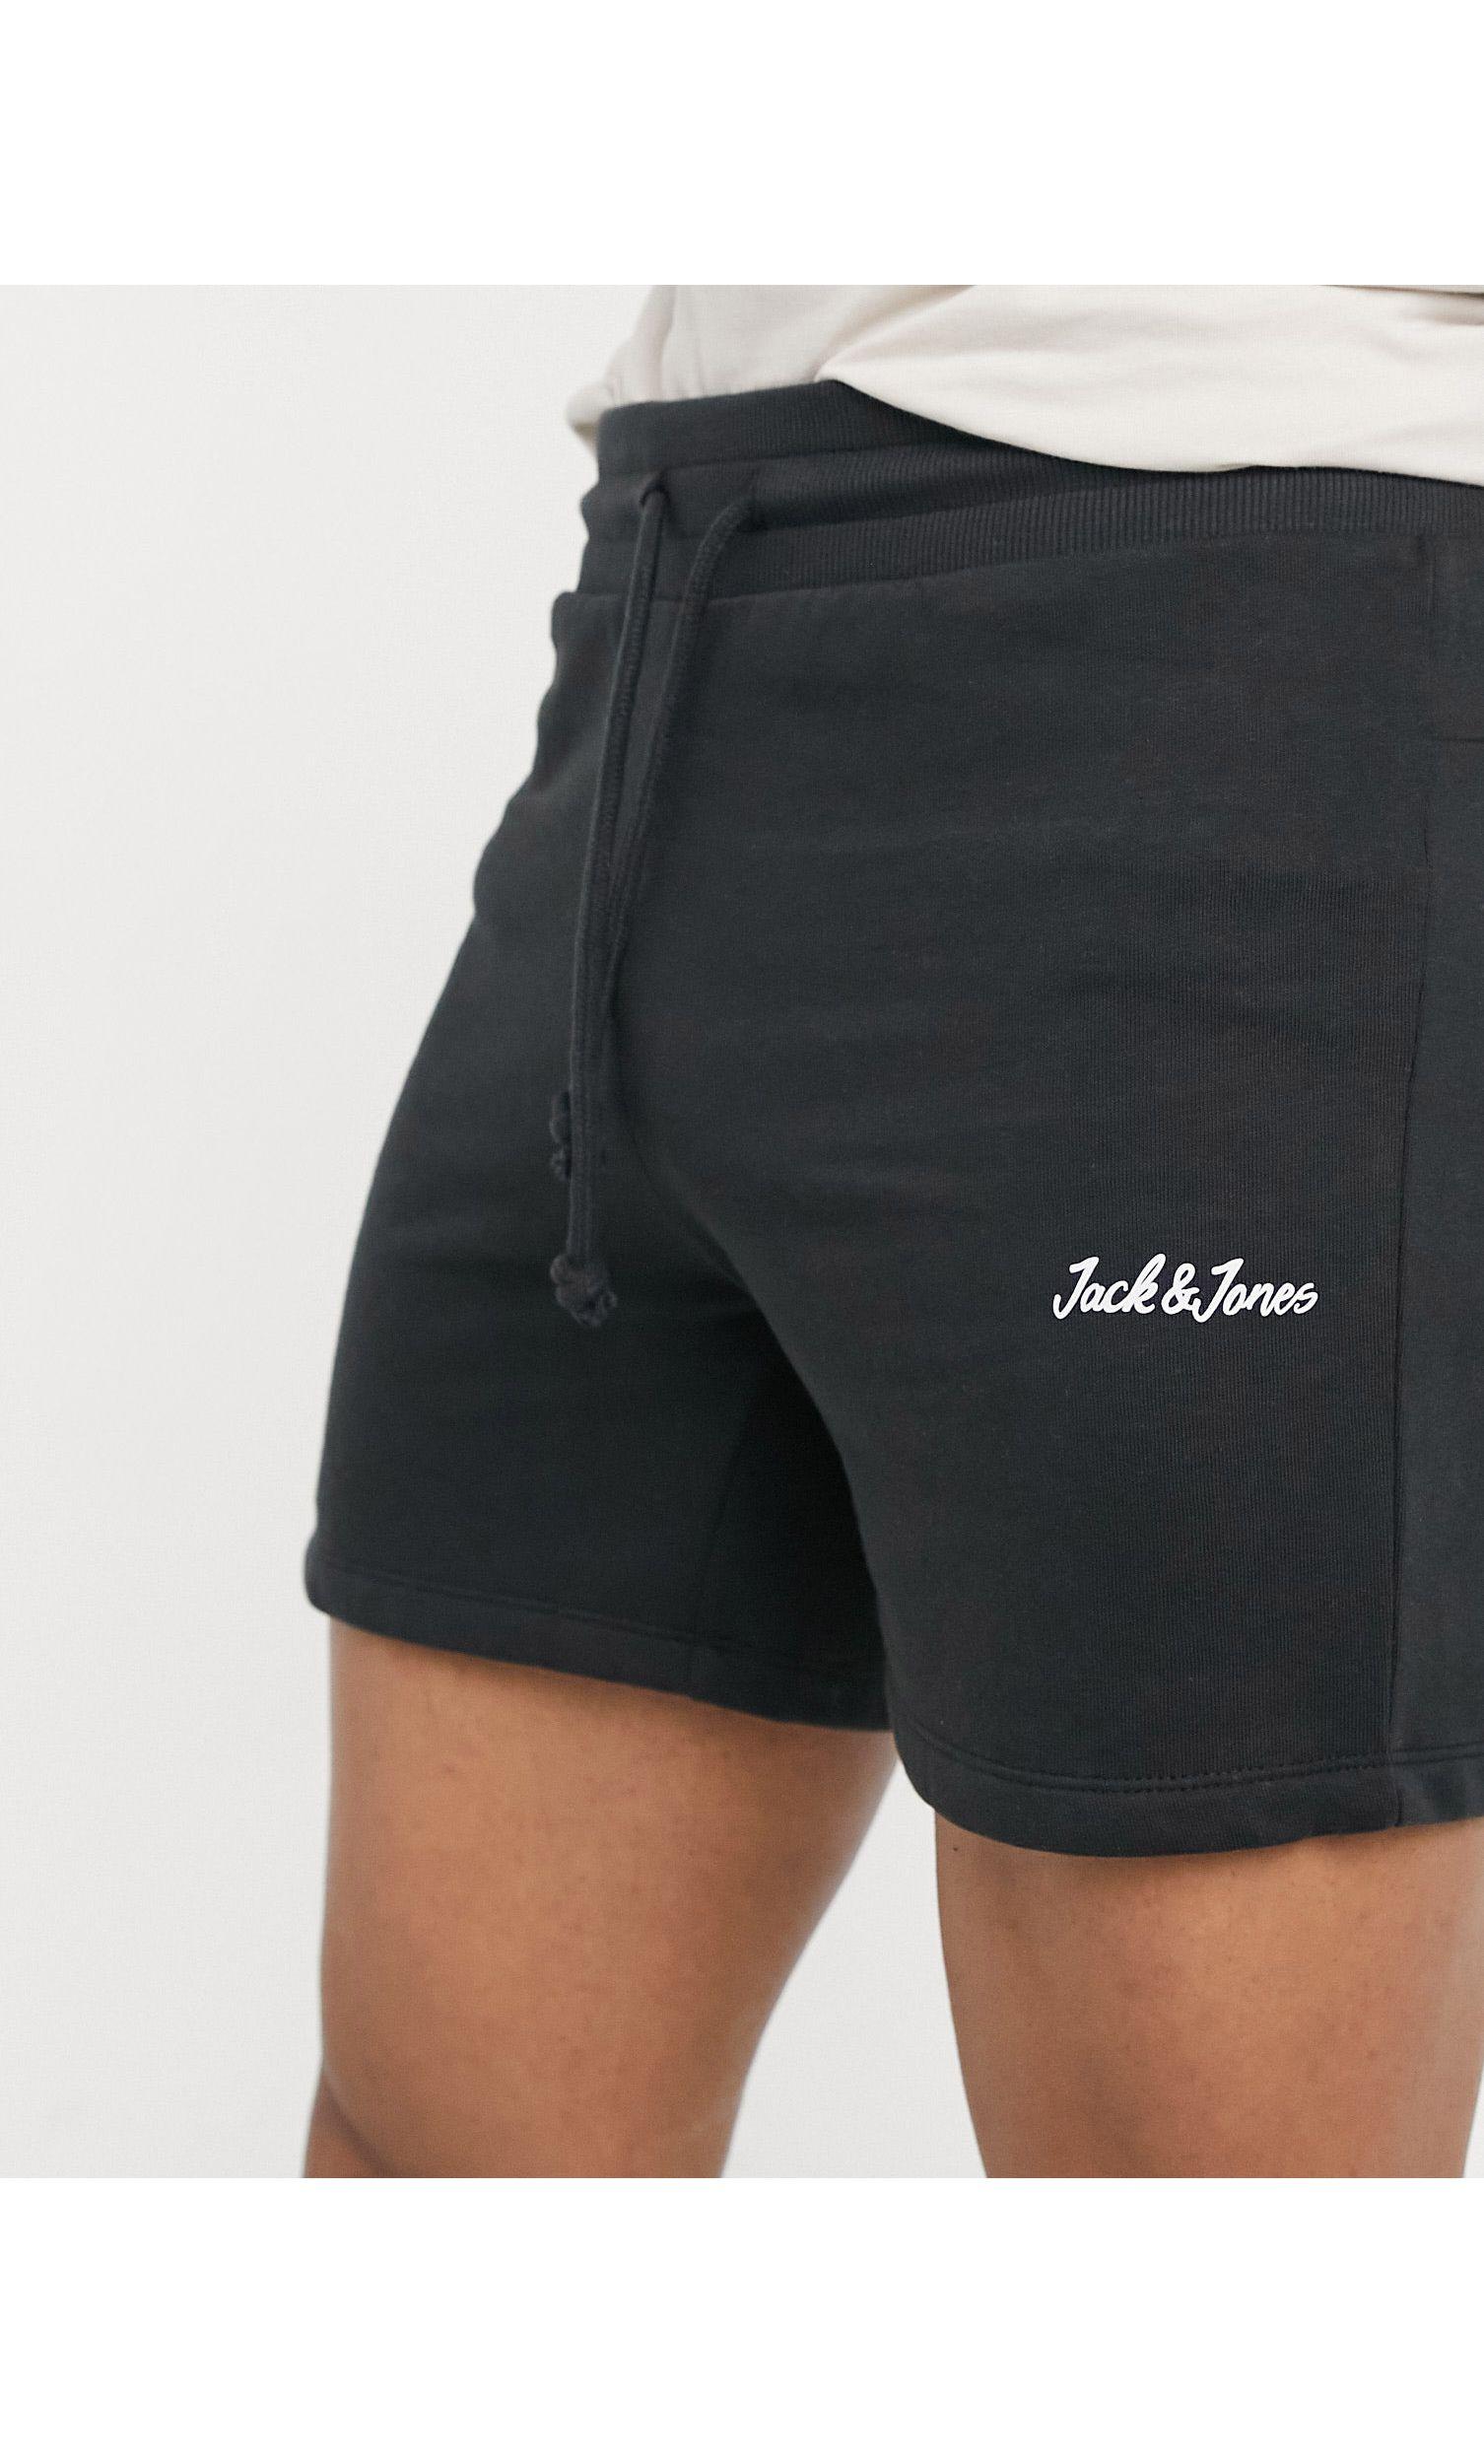 Jack & Jones Core Sweat Shorts With Script Logo in Black for Men - Lyst